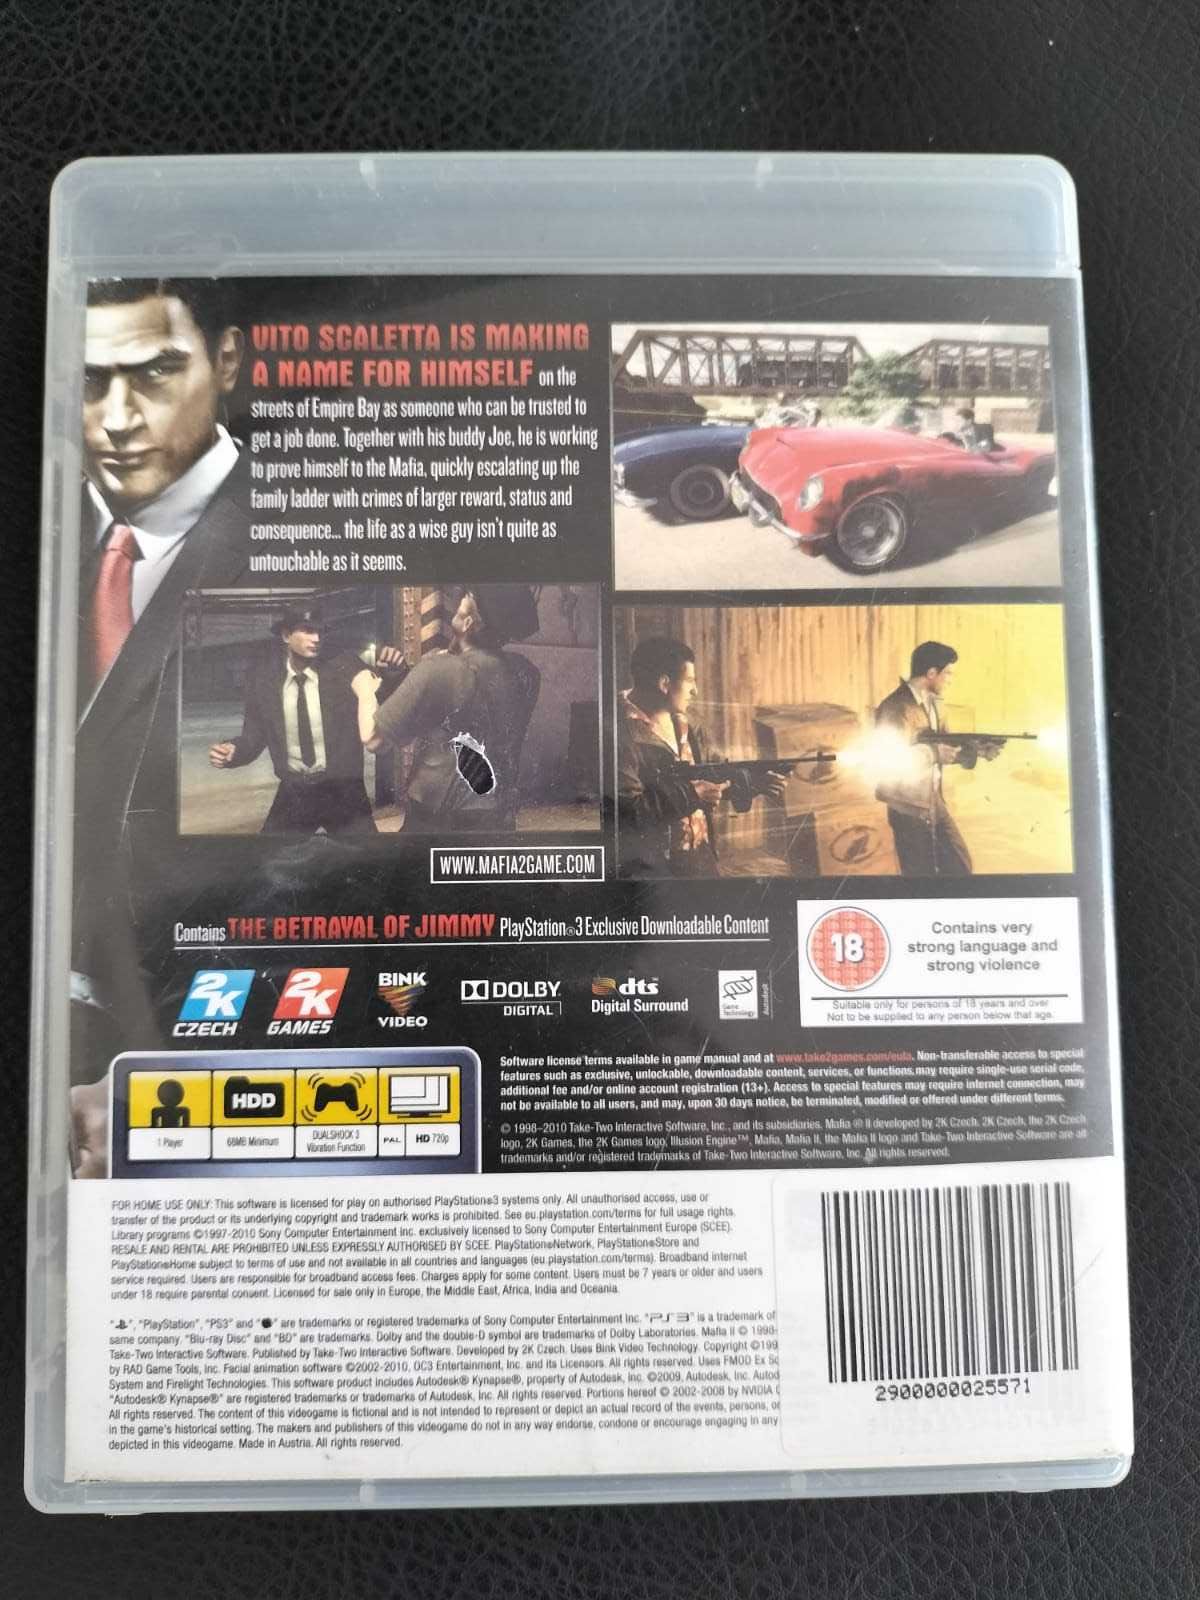 Mafia 2 - gra PS3